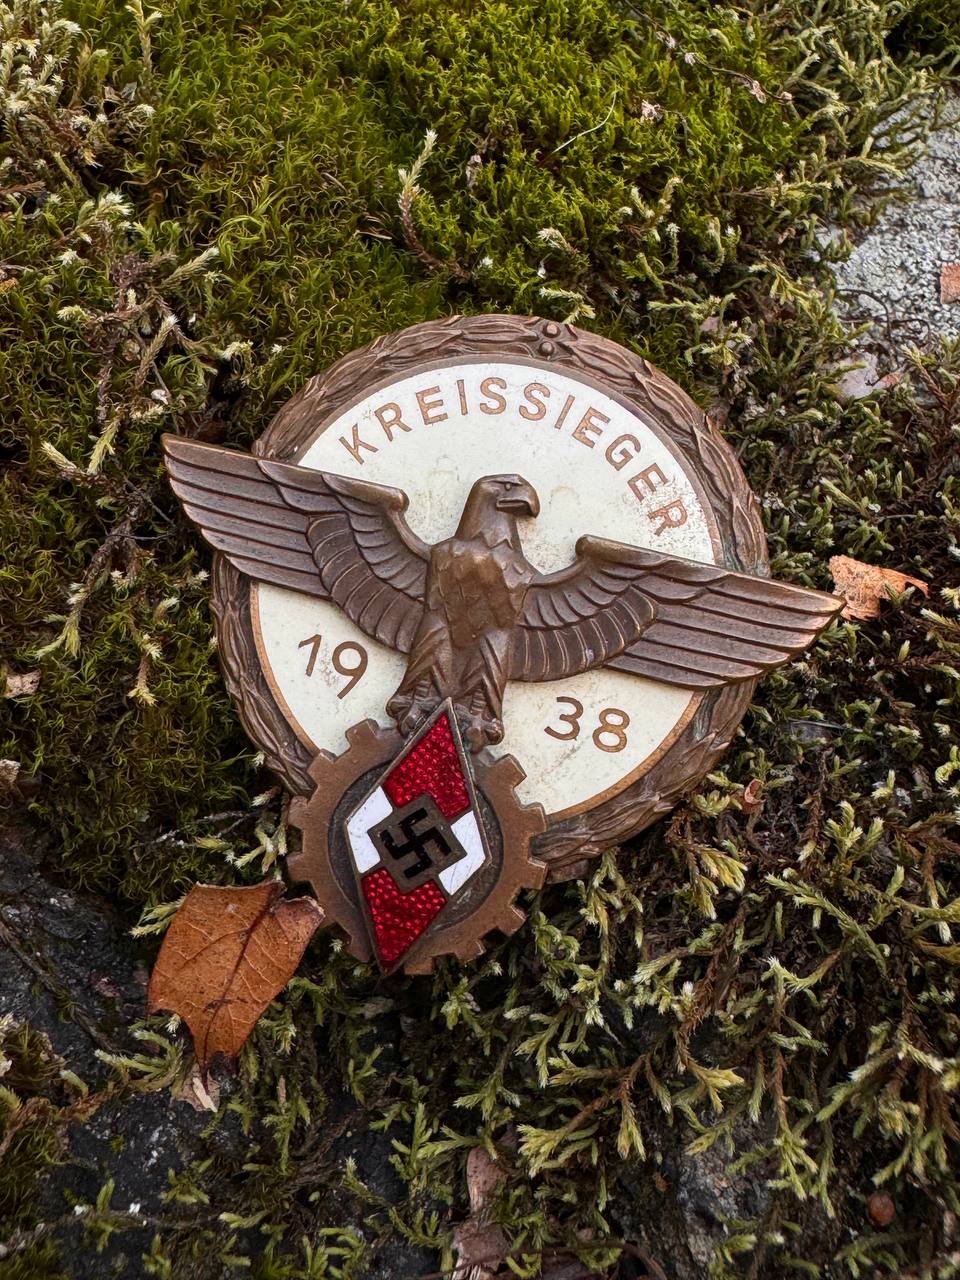 Знак победителя районных соревнований Гитлерюгенд- Kreissieger 1938. От Алексея С.